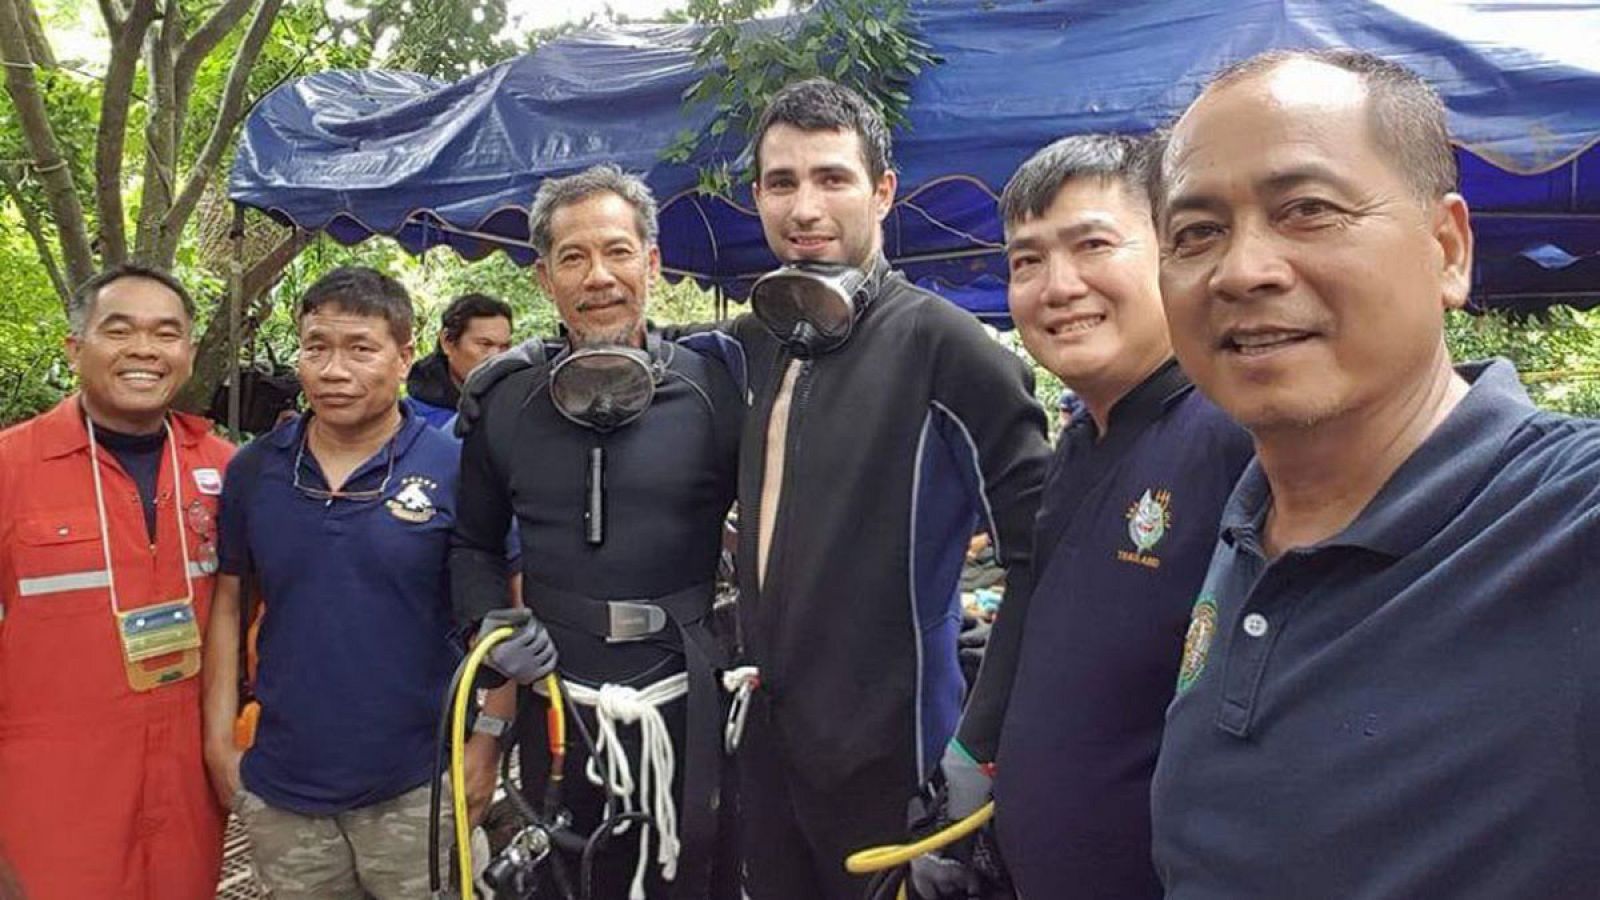 Fernando Raigal, el buzo que participa en las labores de rescate en Tailandia, en el centro de la imagen